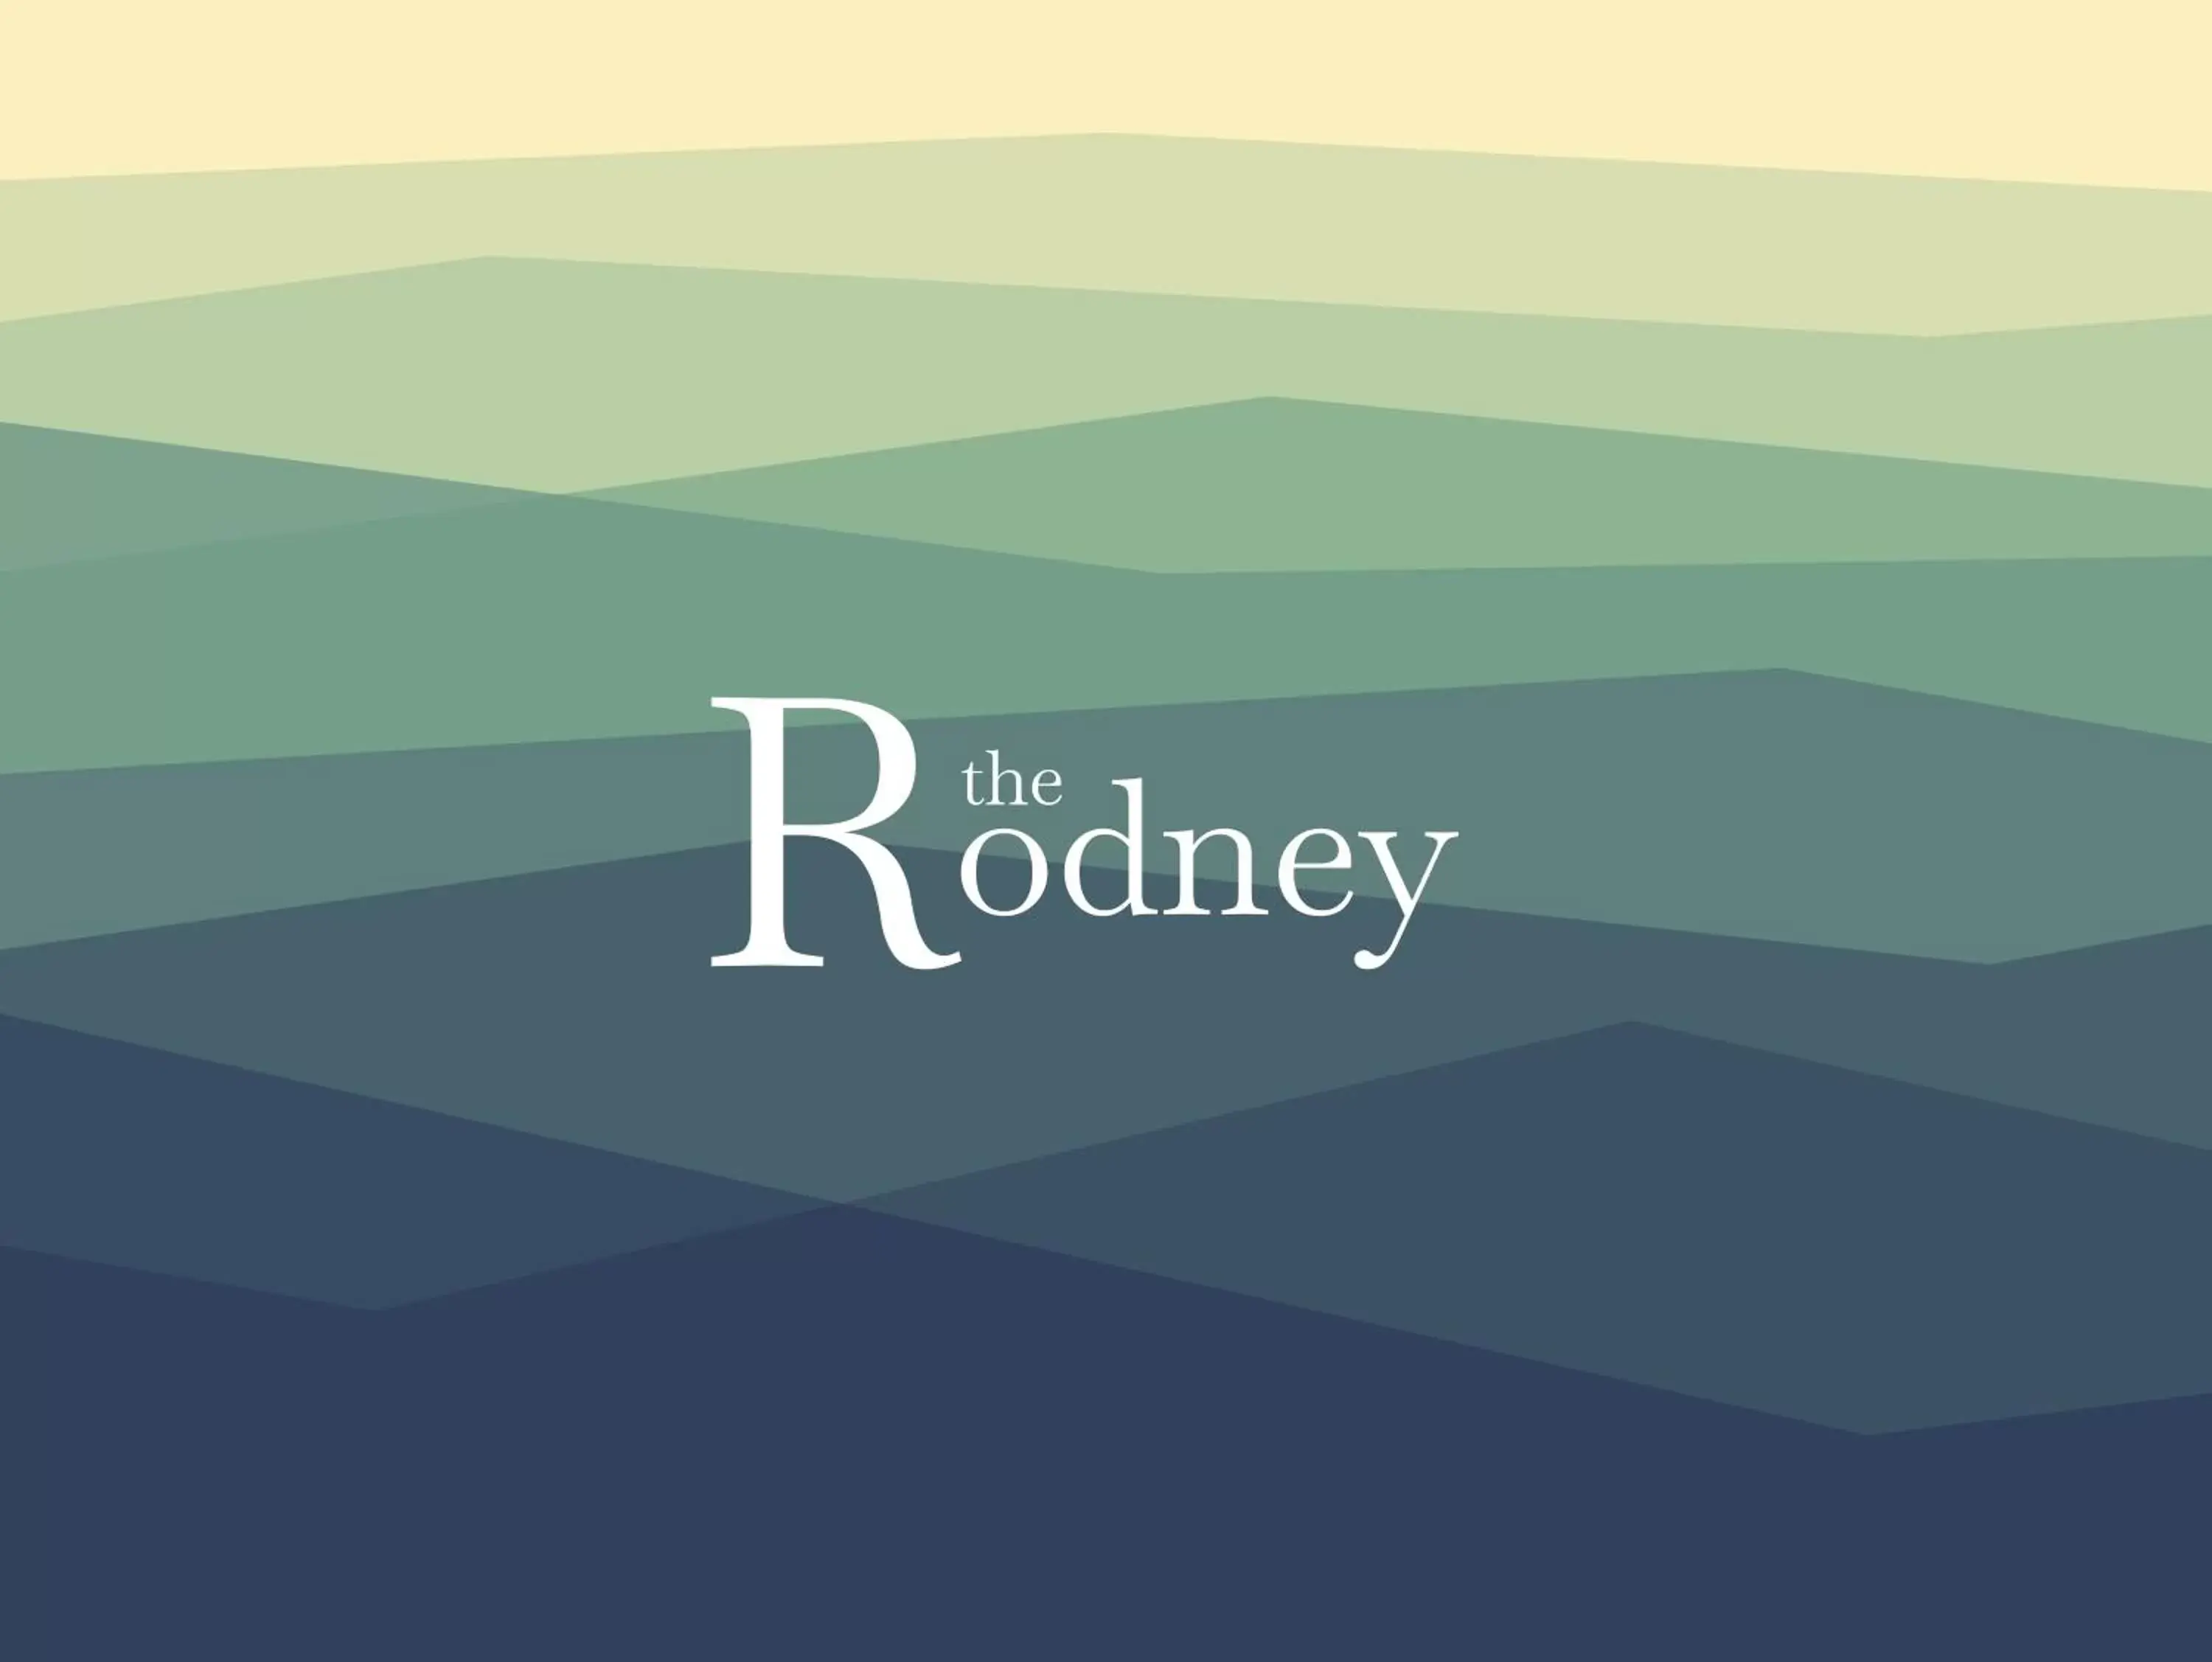 The Rodney